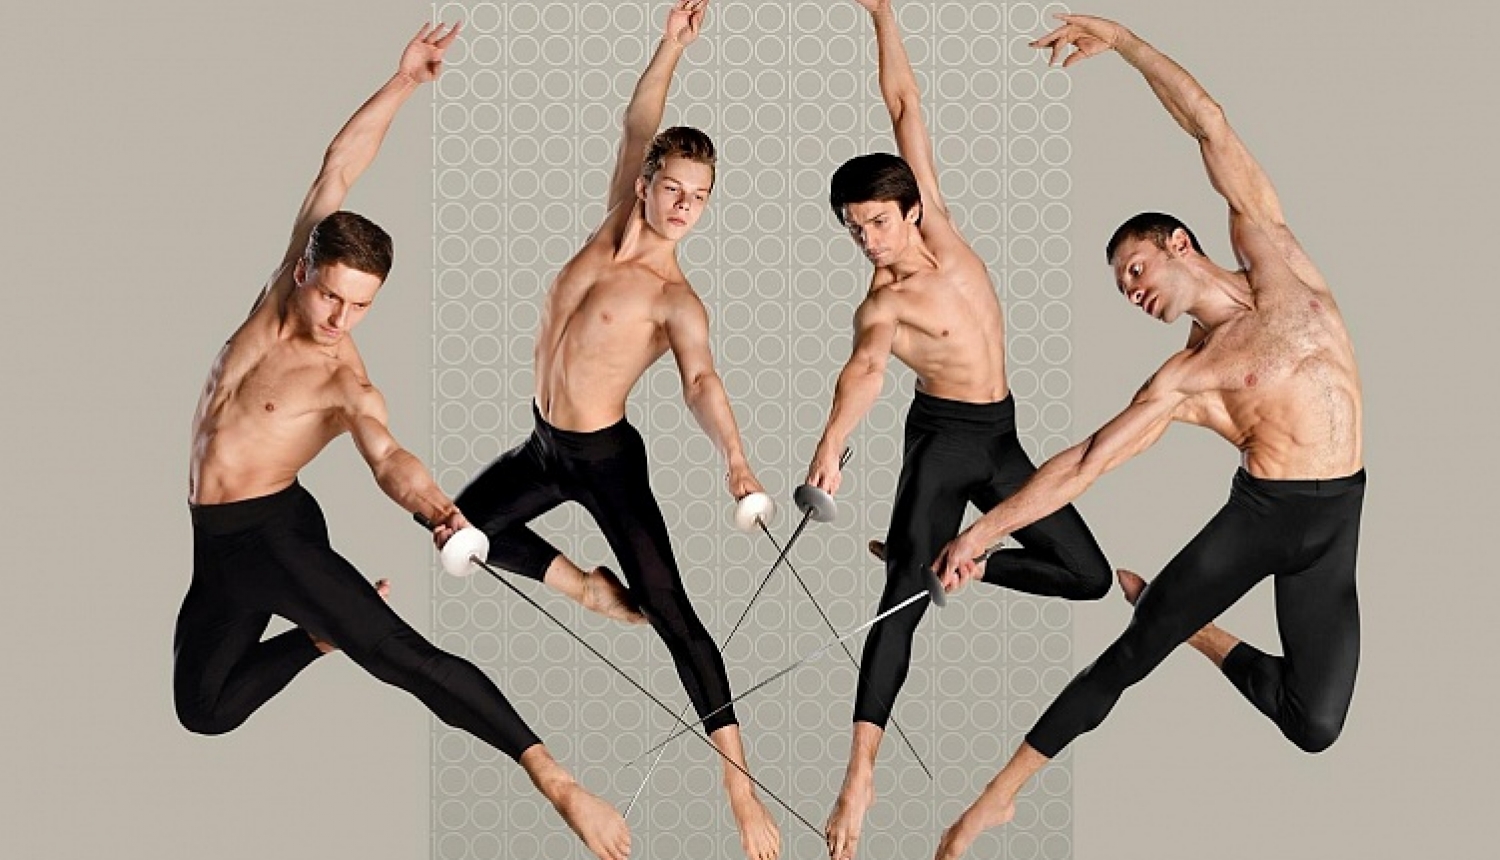 Latvijas Nacionālais balets ar “Trīs musketieru” pirmizrādi 26. oktobrī iepriecinās klasiskā baleta cienītājus